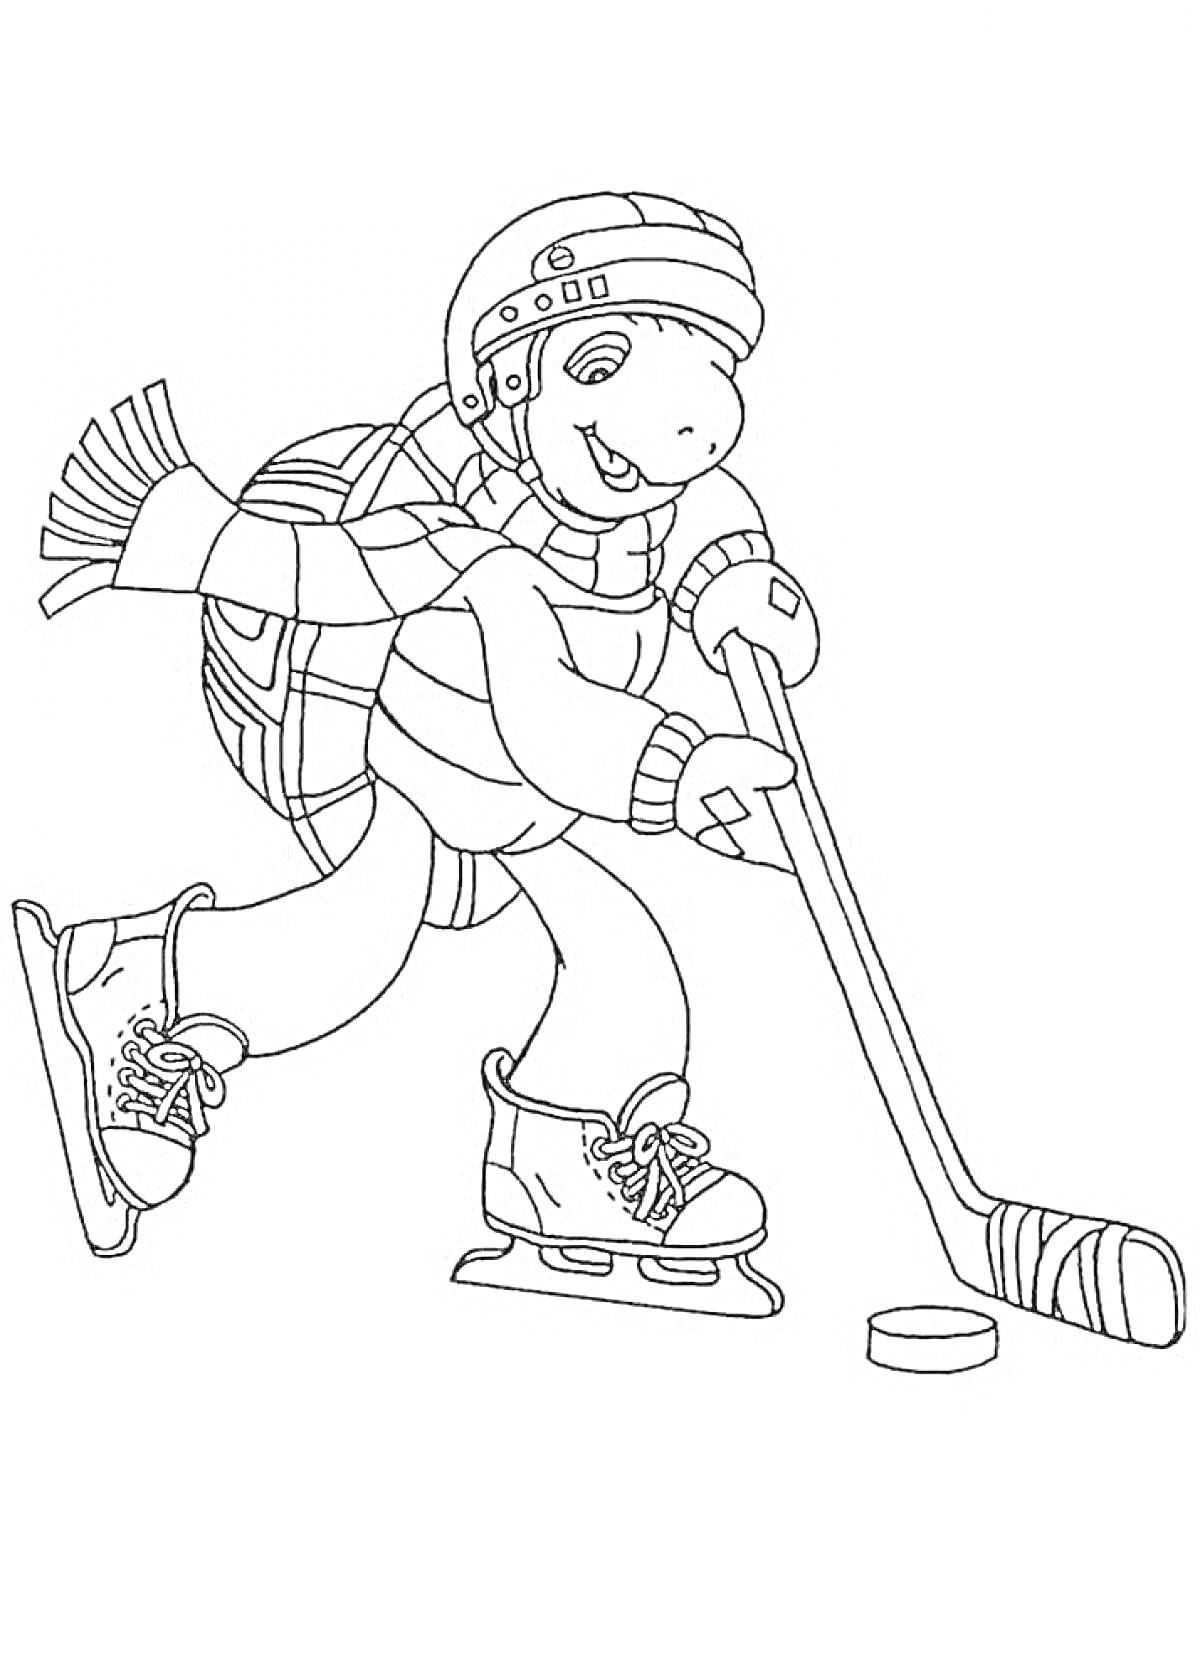 Раскраска Черепаха в хоккейной экипировке играет в хоккей, держа клюшку, шайба, шапка, шарф, коньки